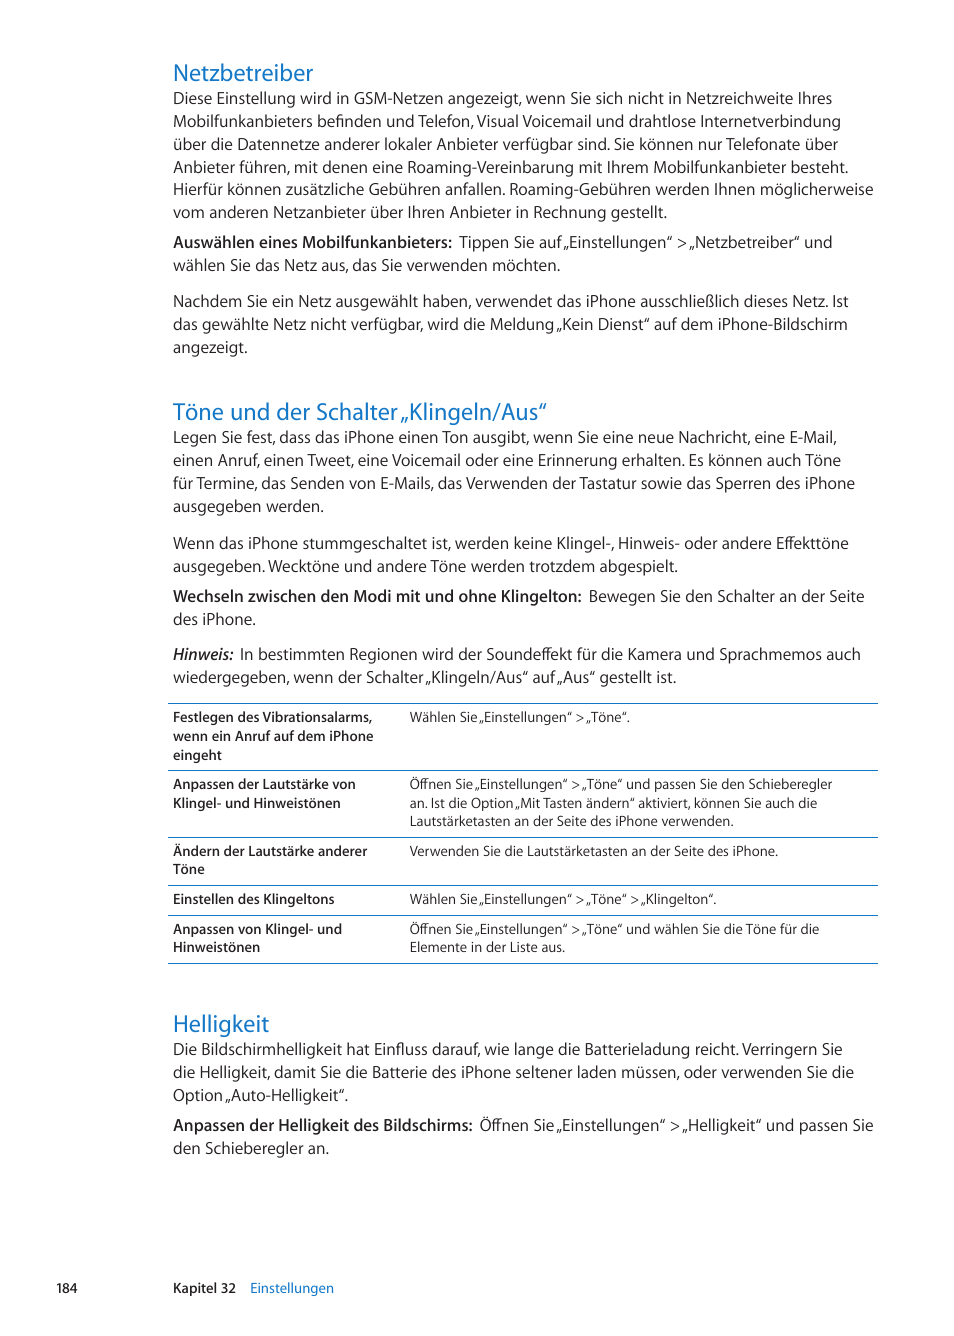 Netzbetreiber, Töne und der schalter „klingeln/aus, Helligkeit | Apple iPhone iOS 5.1 Benutzerhandbuch | Seite 184 / 205